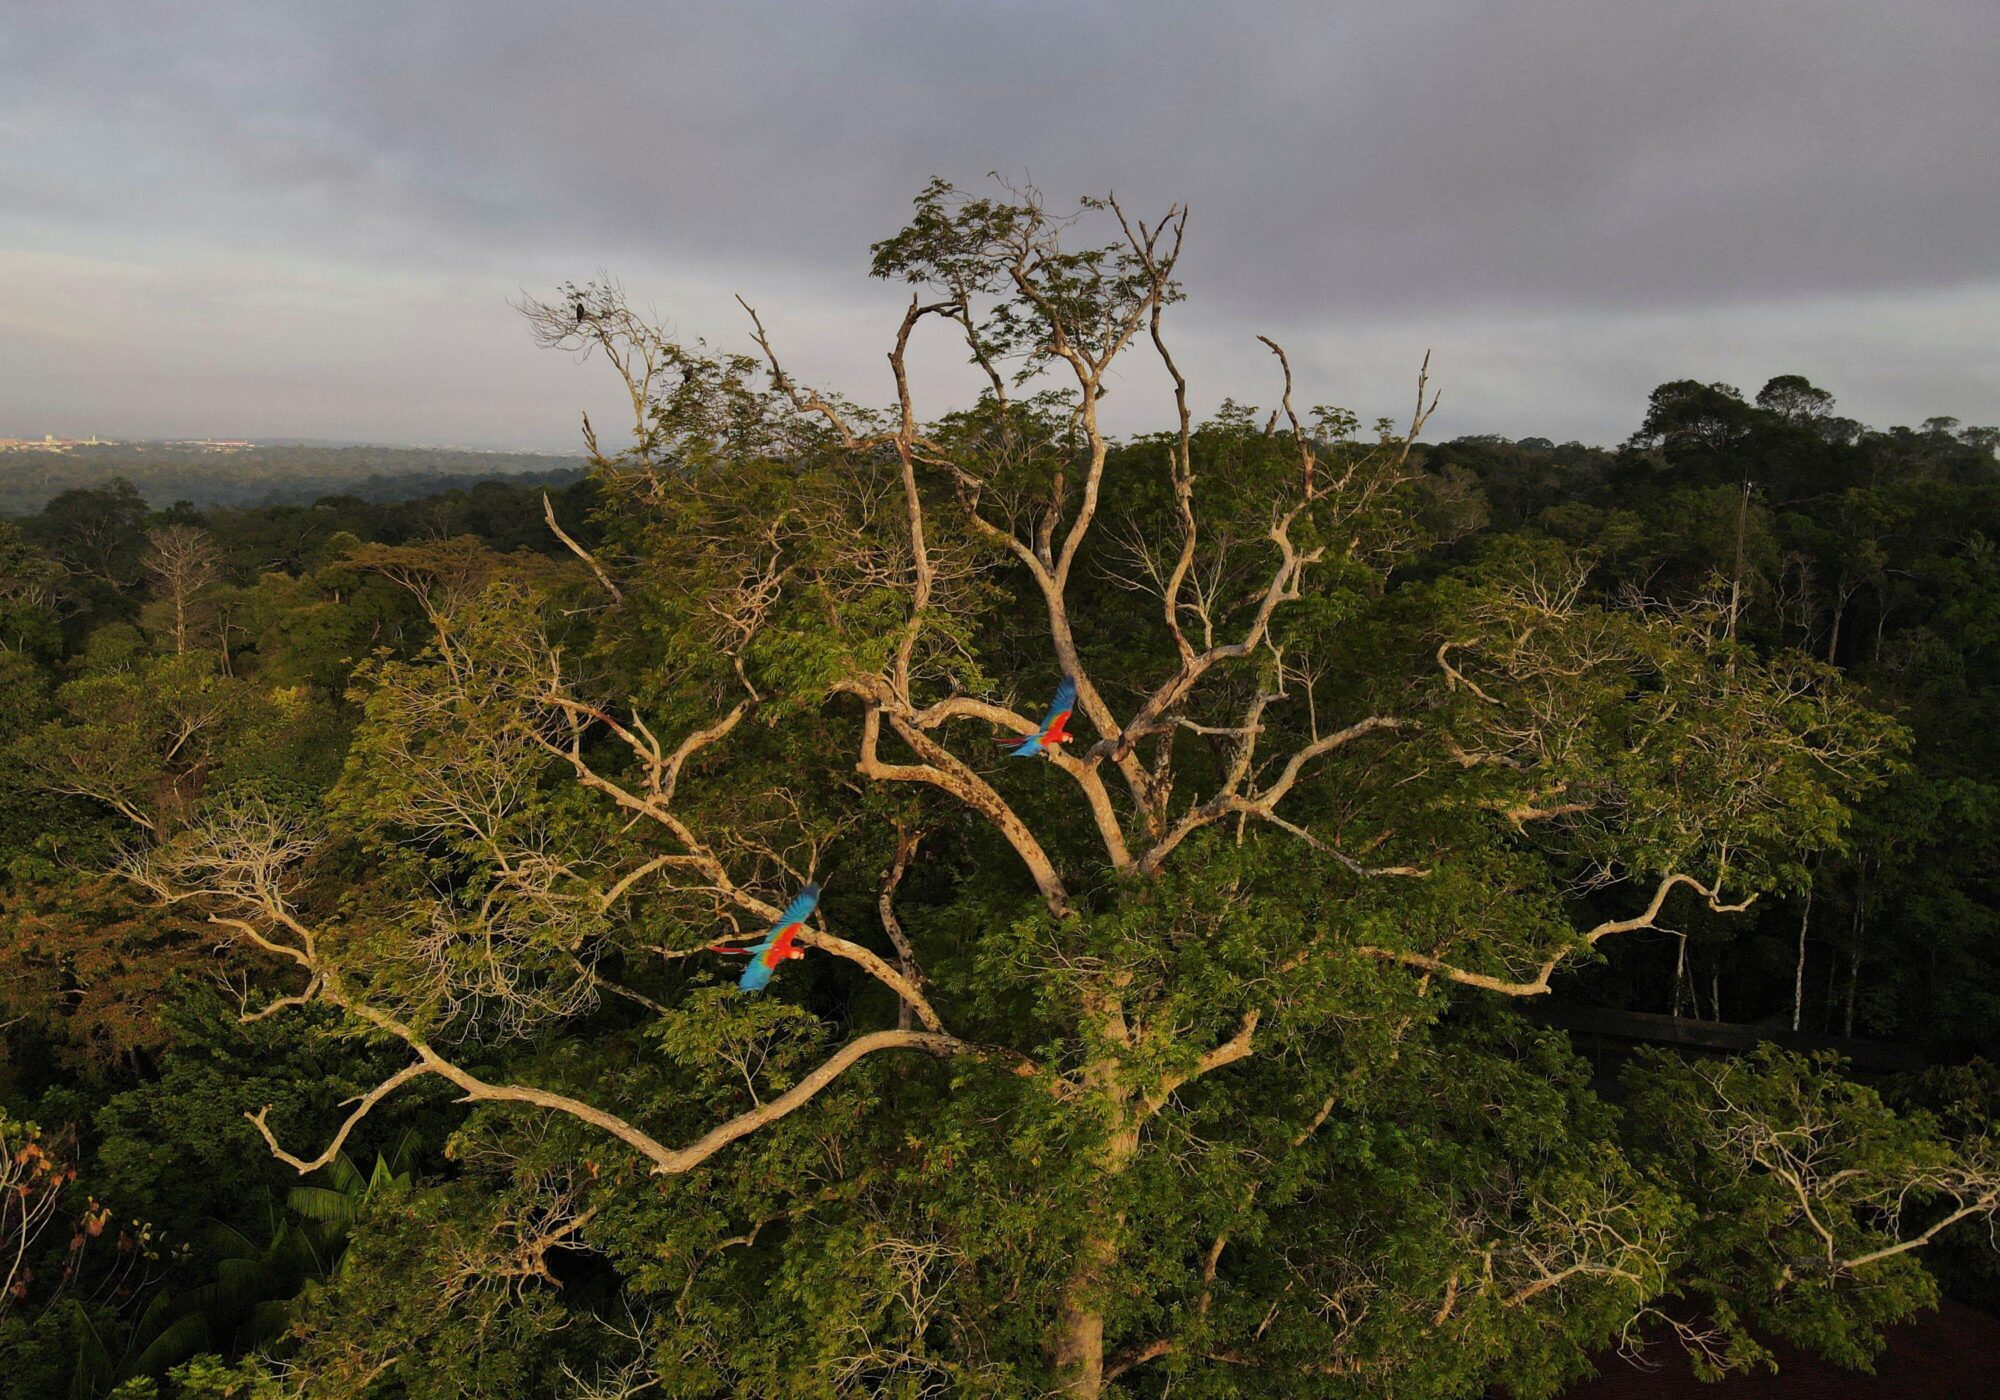 <p>Araras voam sobre a floresta amazônica em Manaus, no Brasil. Em 2023, o mundo volta suas atenções para a relação do presidente Lula com a China, fator que pode ser fundamental para reverter o desmatamento na região (Imagem: Bruno Kelly / Alamy)</p>